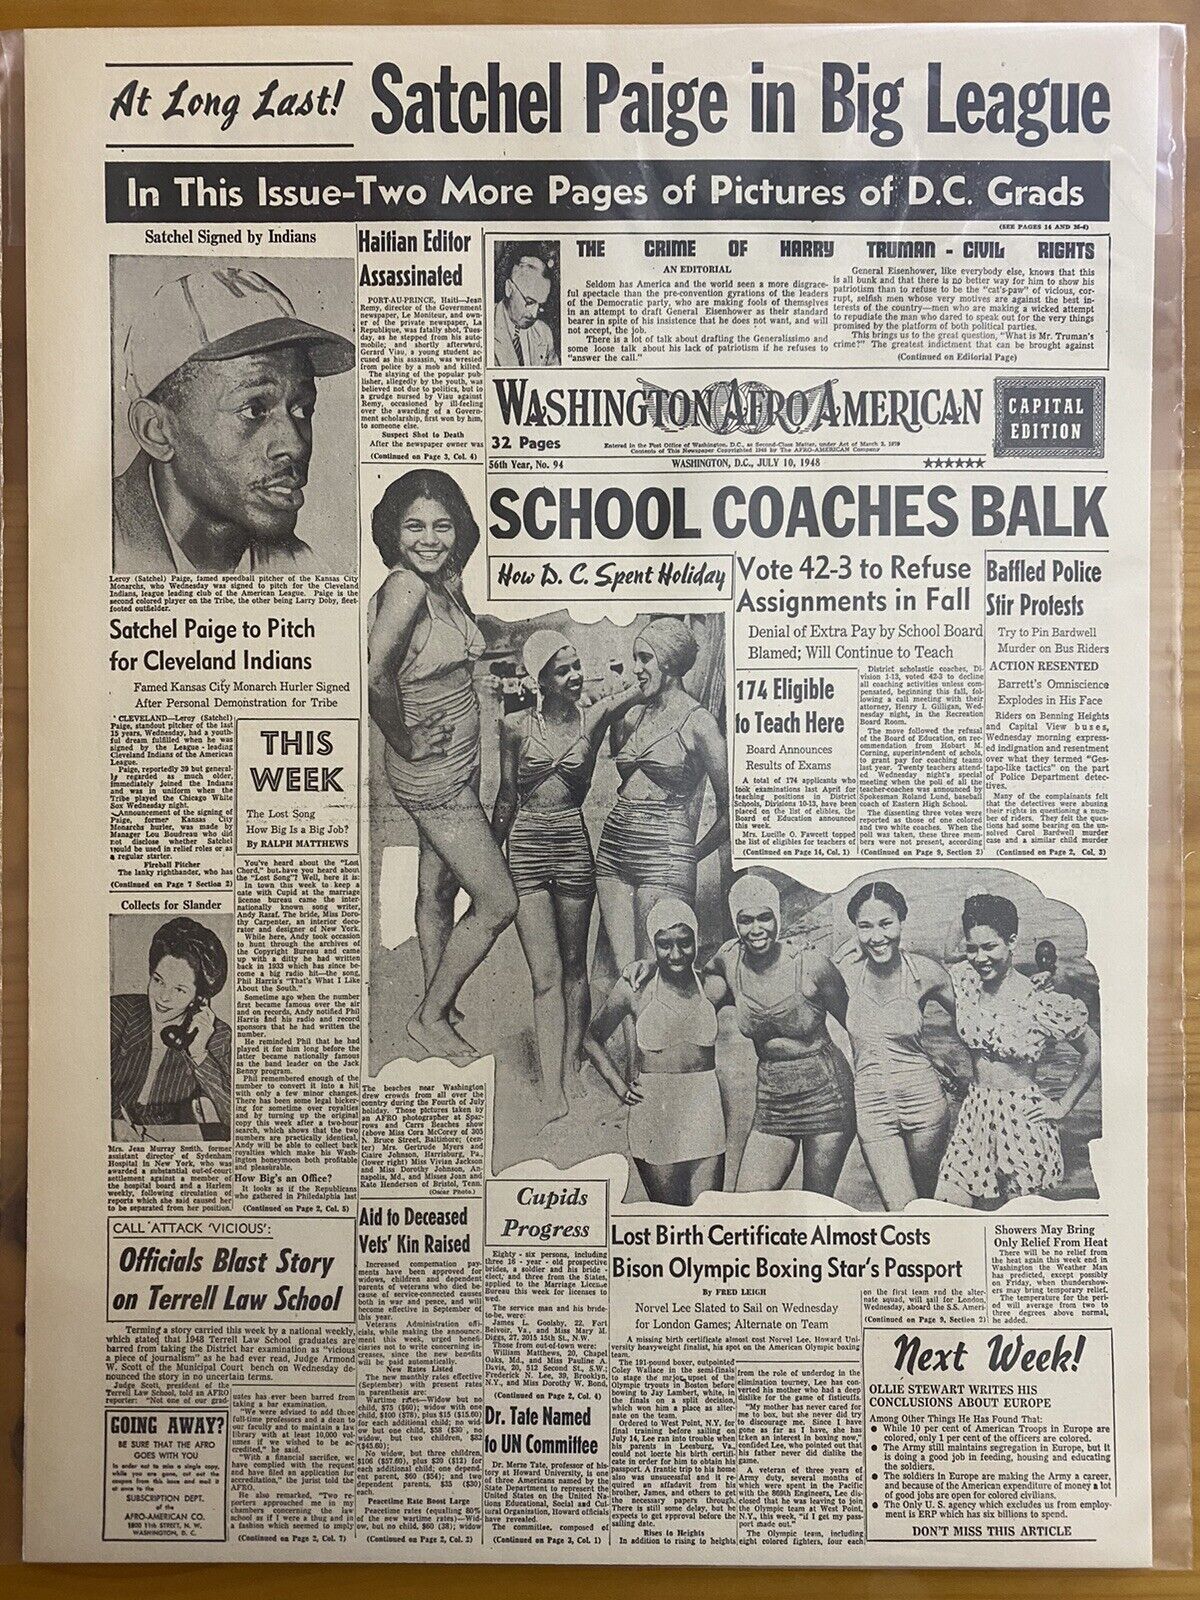 VINTAGE NEWSPAPER HEADLINE SATCHEL PAIGE ROOKIE JOINS MAJOR LEAGUE BASEBALL 1948